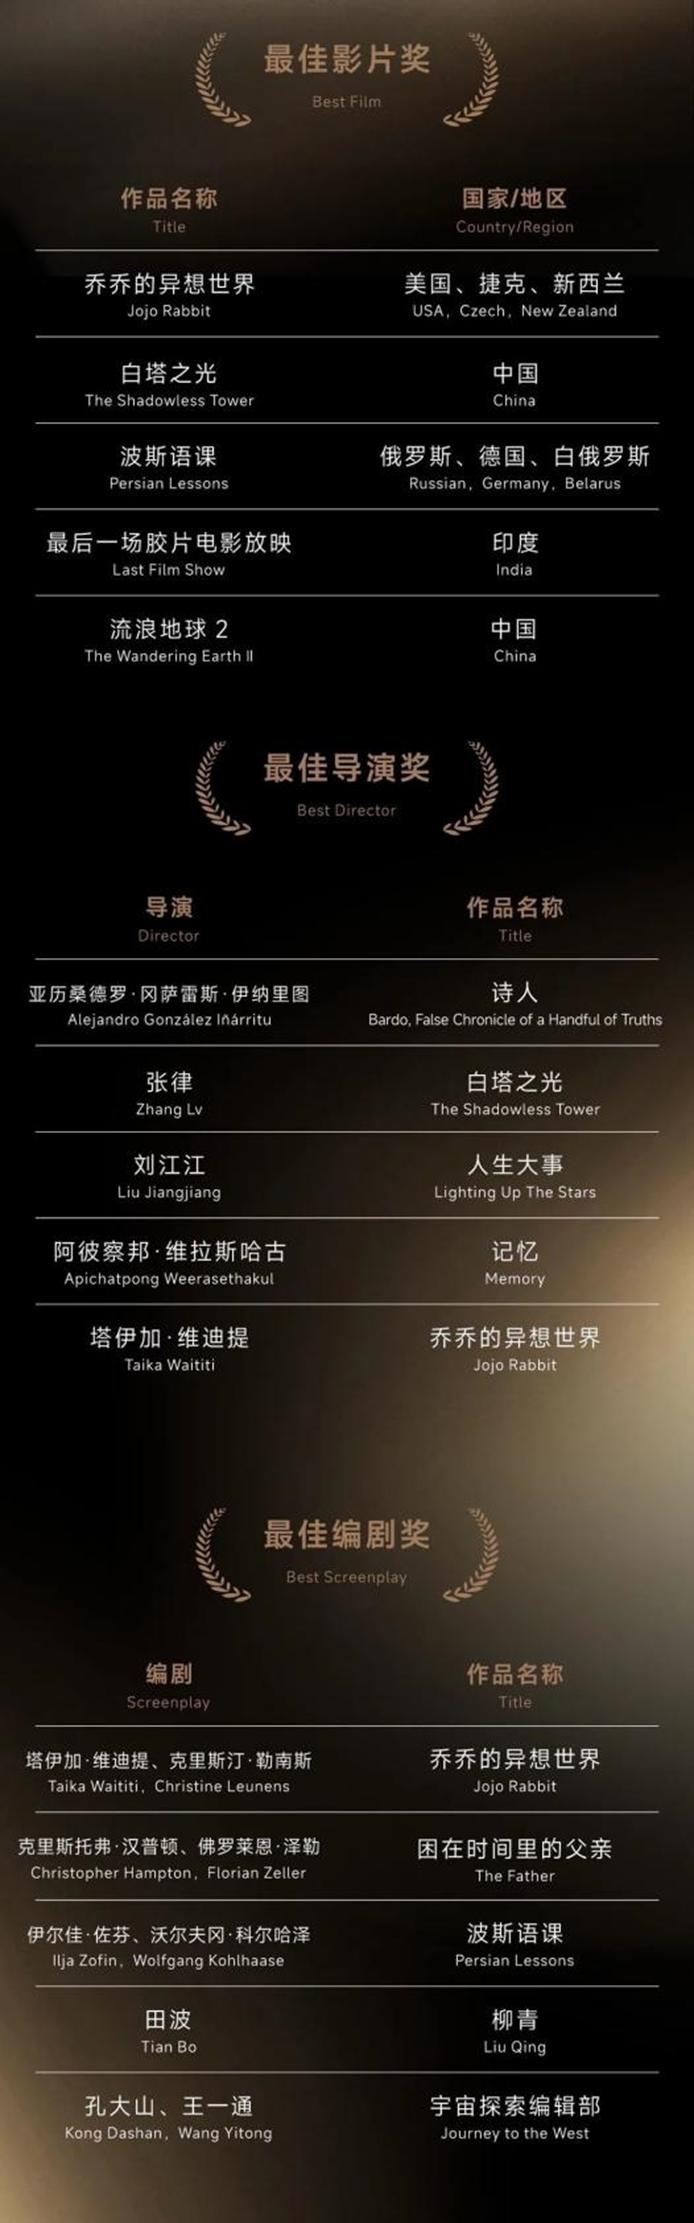 首届金熊猫奖初评委代表、中国电影家协会副主席任仲伦：我看到了不同文化对真善美的共同追求